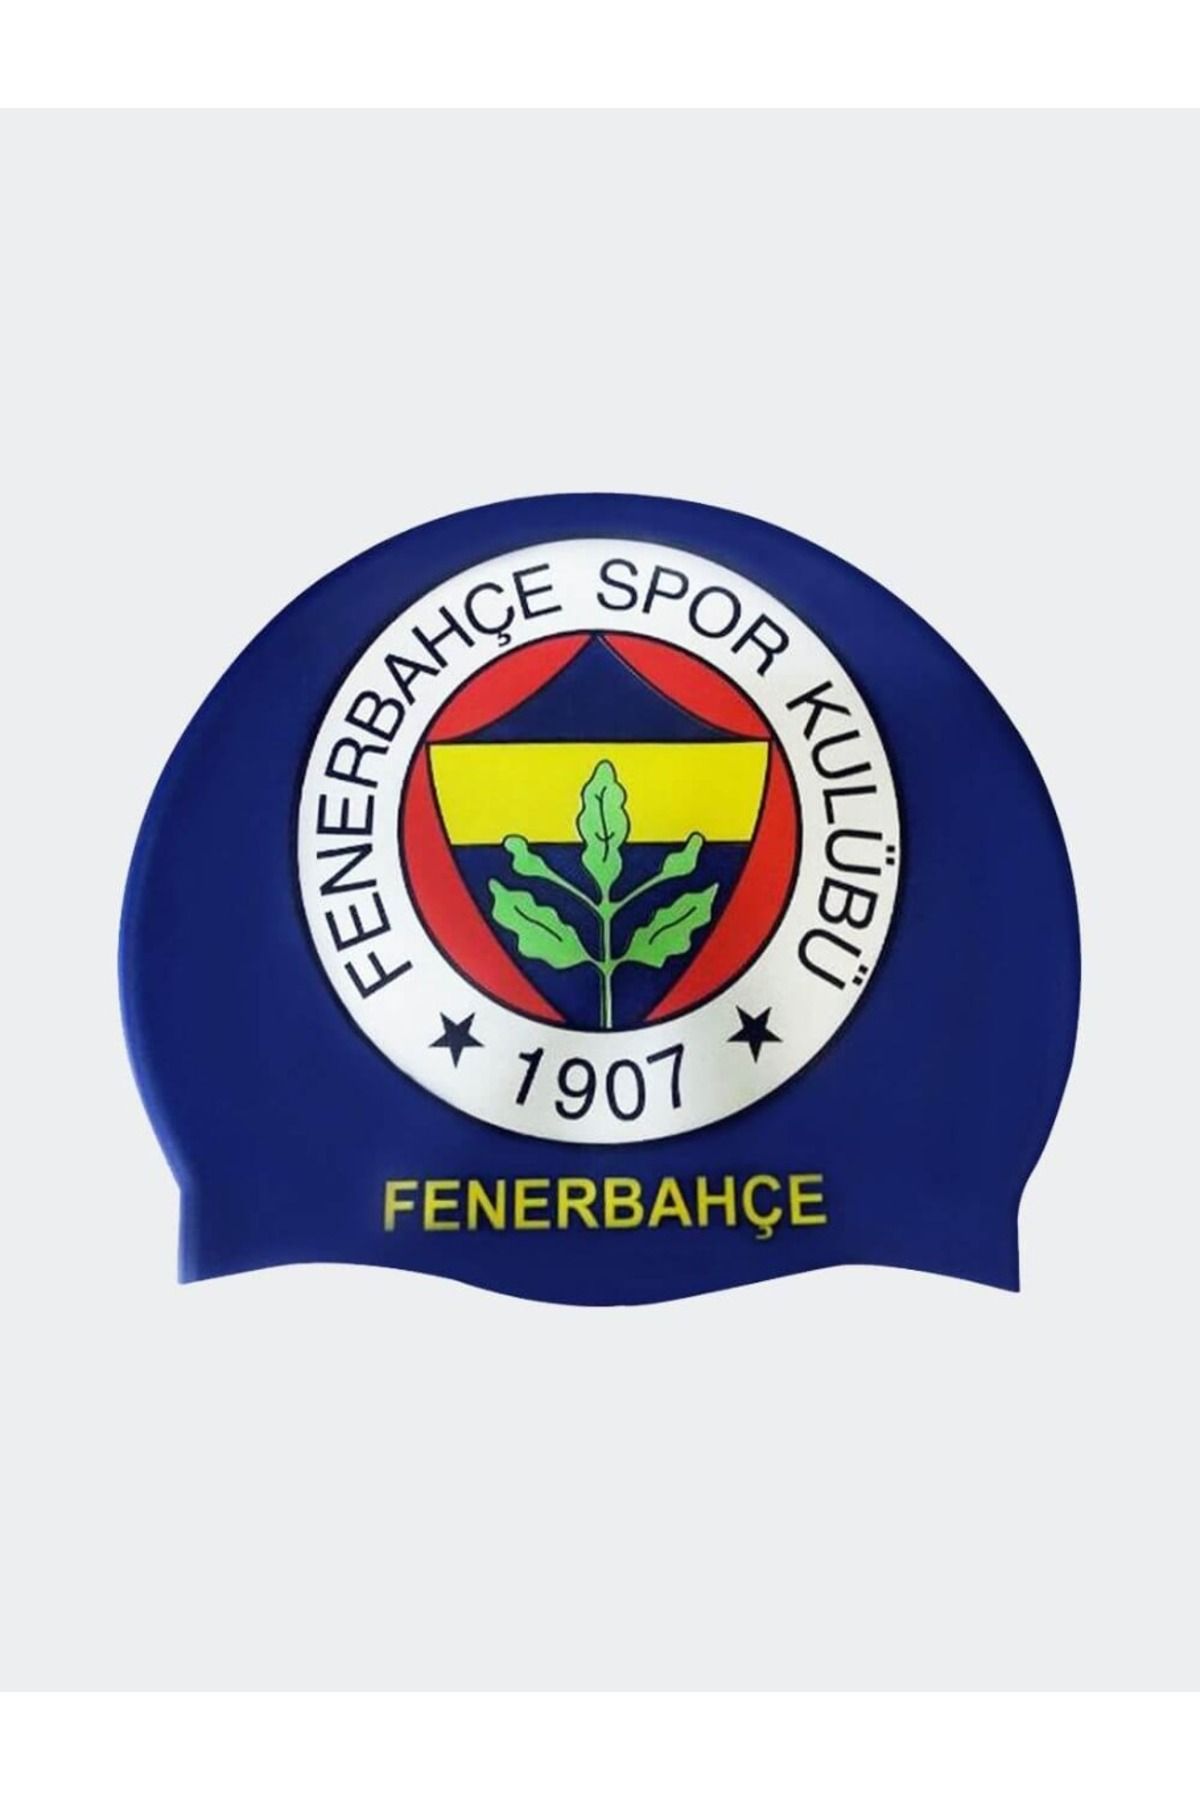 Fenerbahçe YETİŞKİN FENERBAHÇE BONESİ